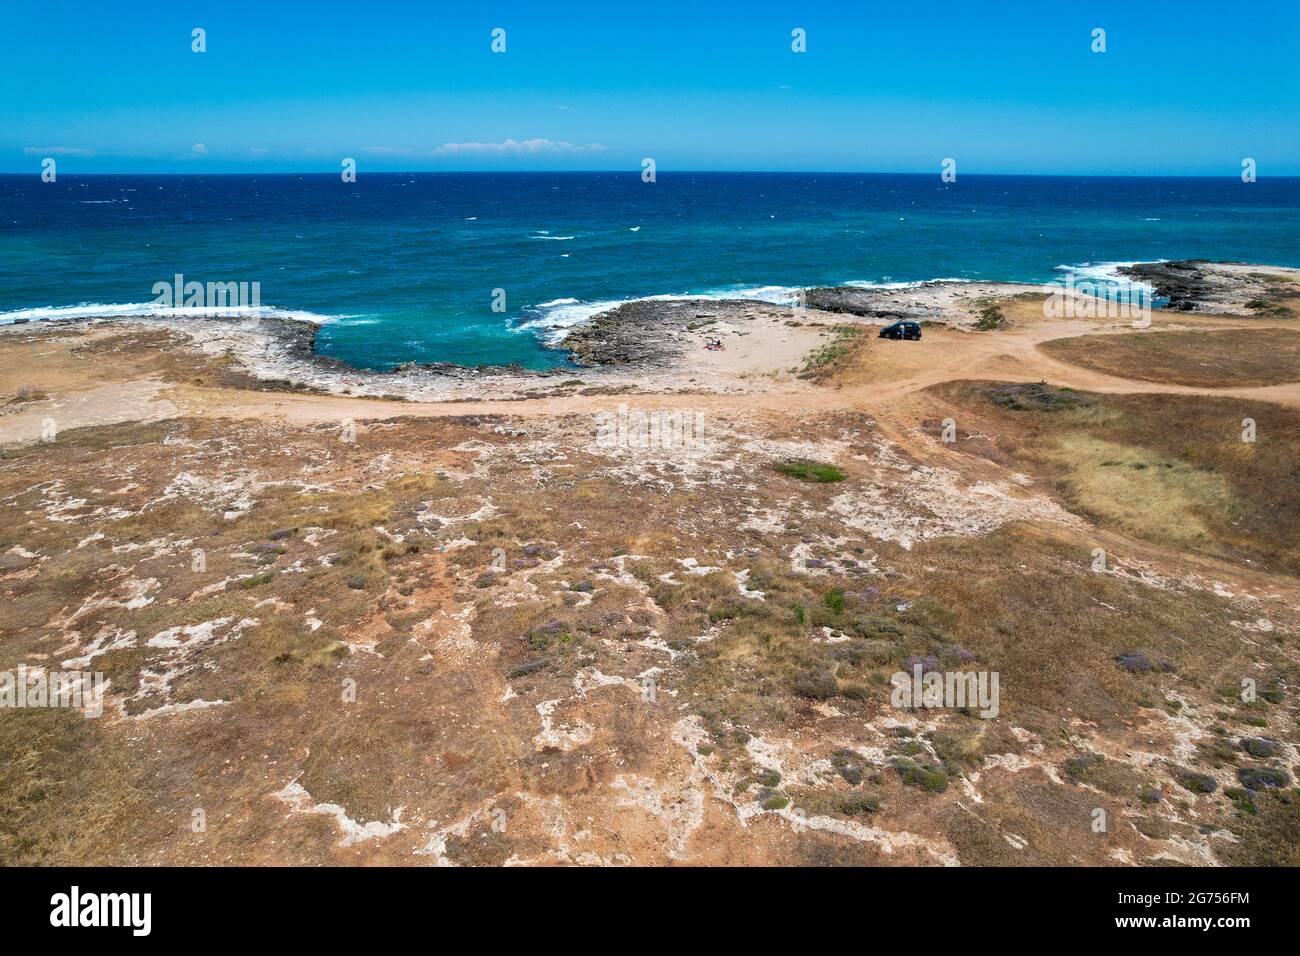 Costa Merlata, spiagge vicino Ostuni fotografate con drone dall'alto. Offre uno dei tratti di costa più belli della Puglia e dell'Italia Foto Stock